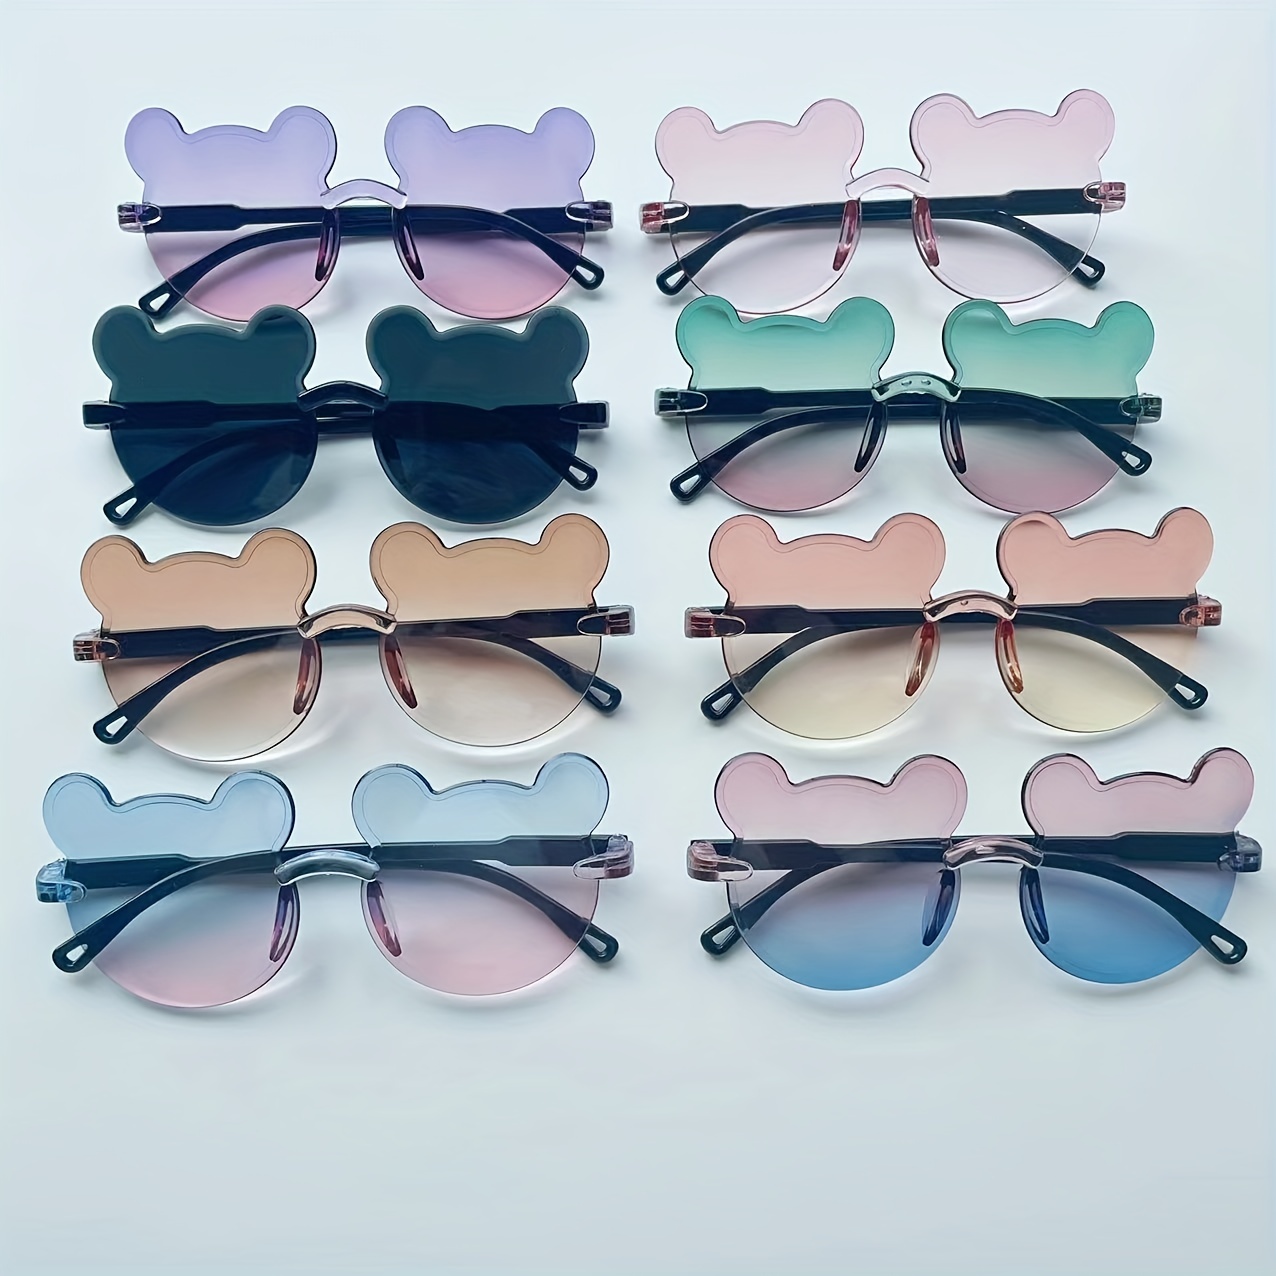 Kinder Silikon Sonnenbrille